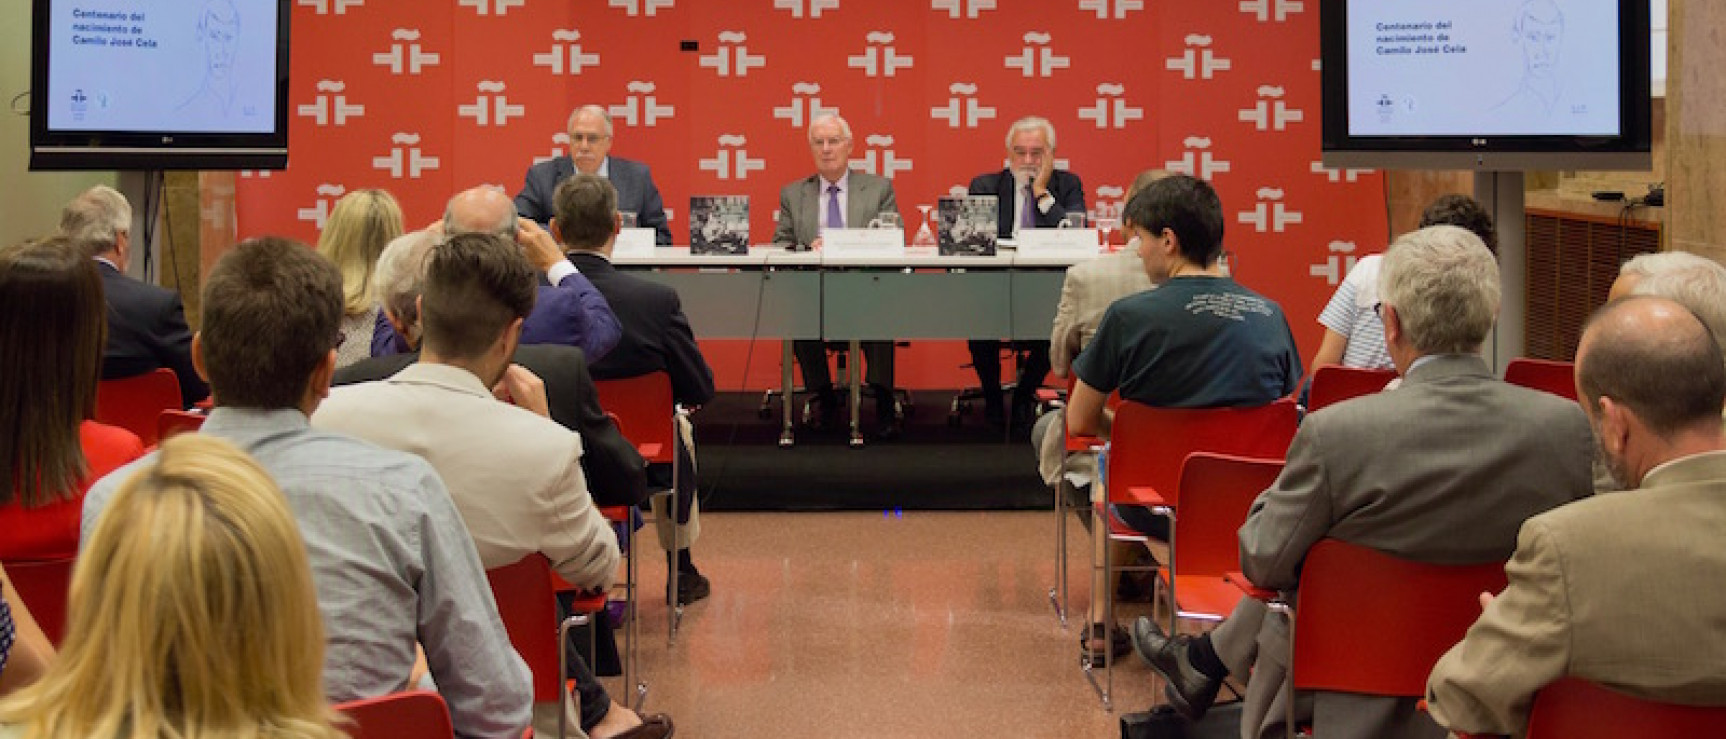 Conferencia de prensa en el Instituto Cervantes. De izquierda a derecha: Camilo Cela Conde, Víctor García de la Concha y Darío Villanueva.